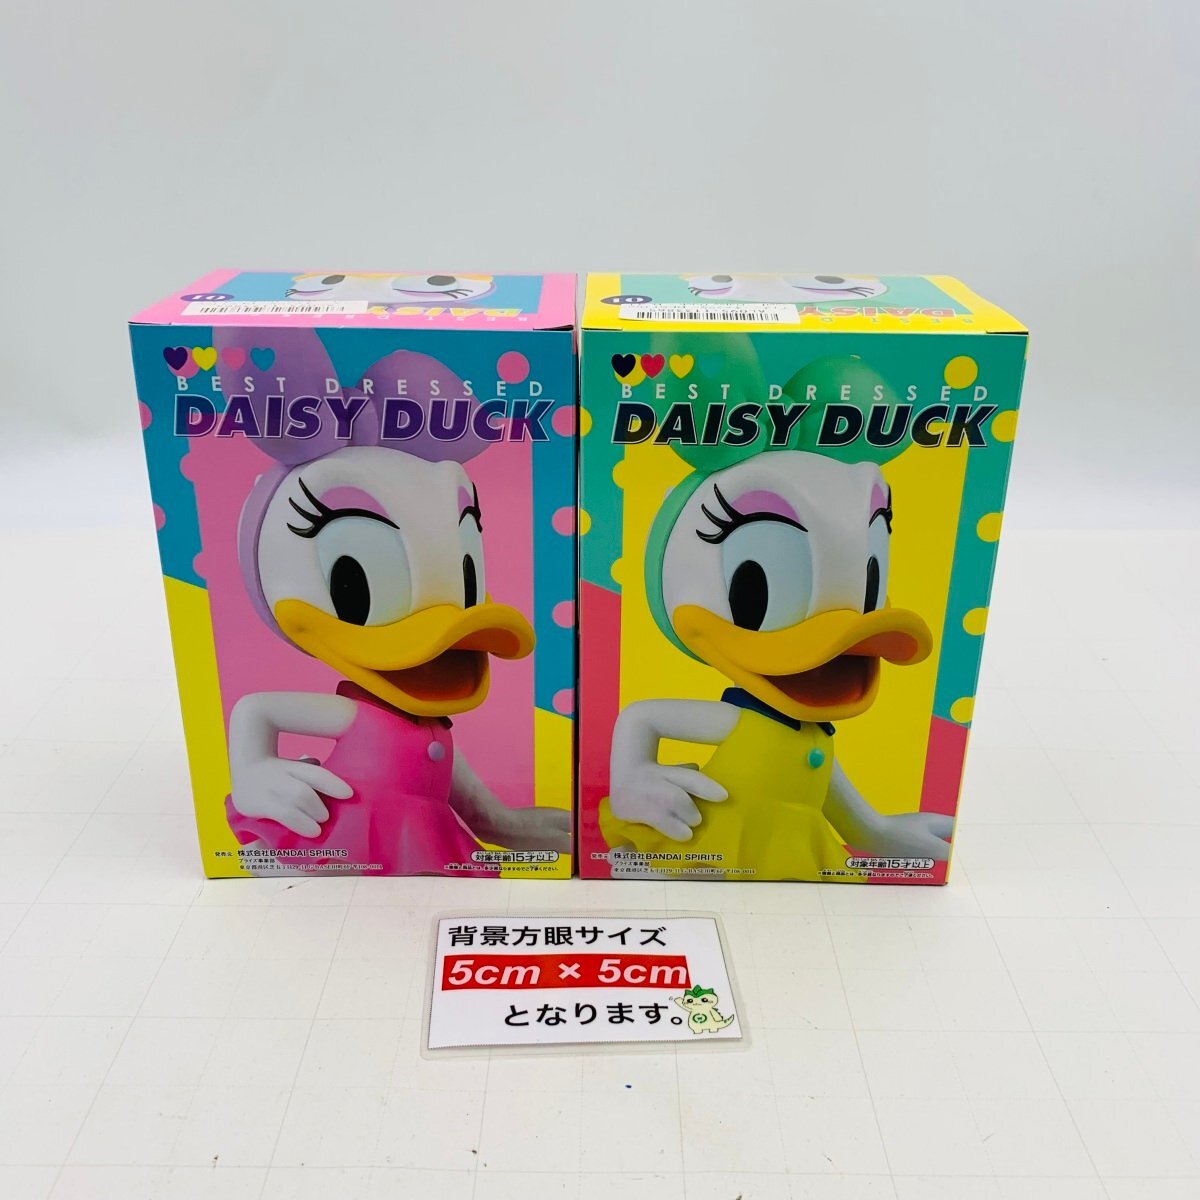 新品未開封 ディズニーキャラクター Disney Character BEST Dressed デイジーダック Daisy Duck ABカラー 2種セット_画像2